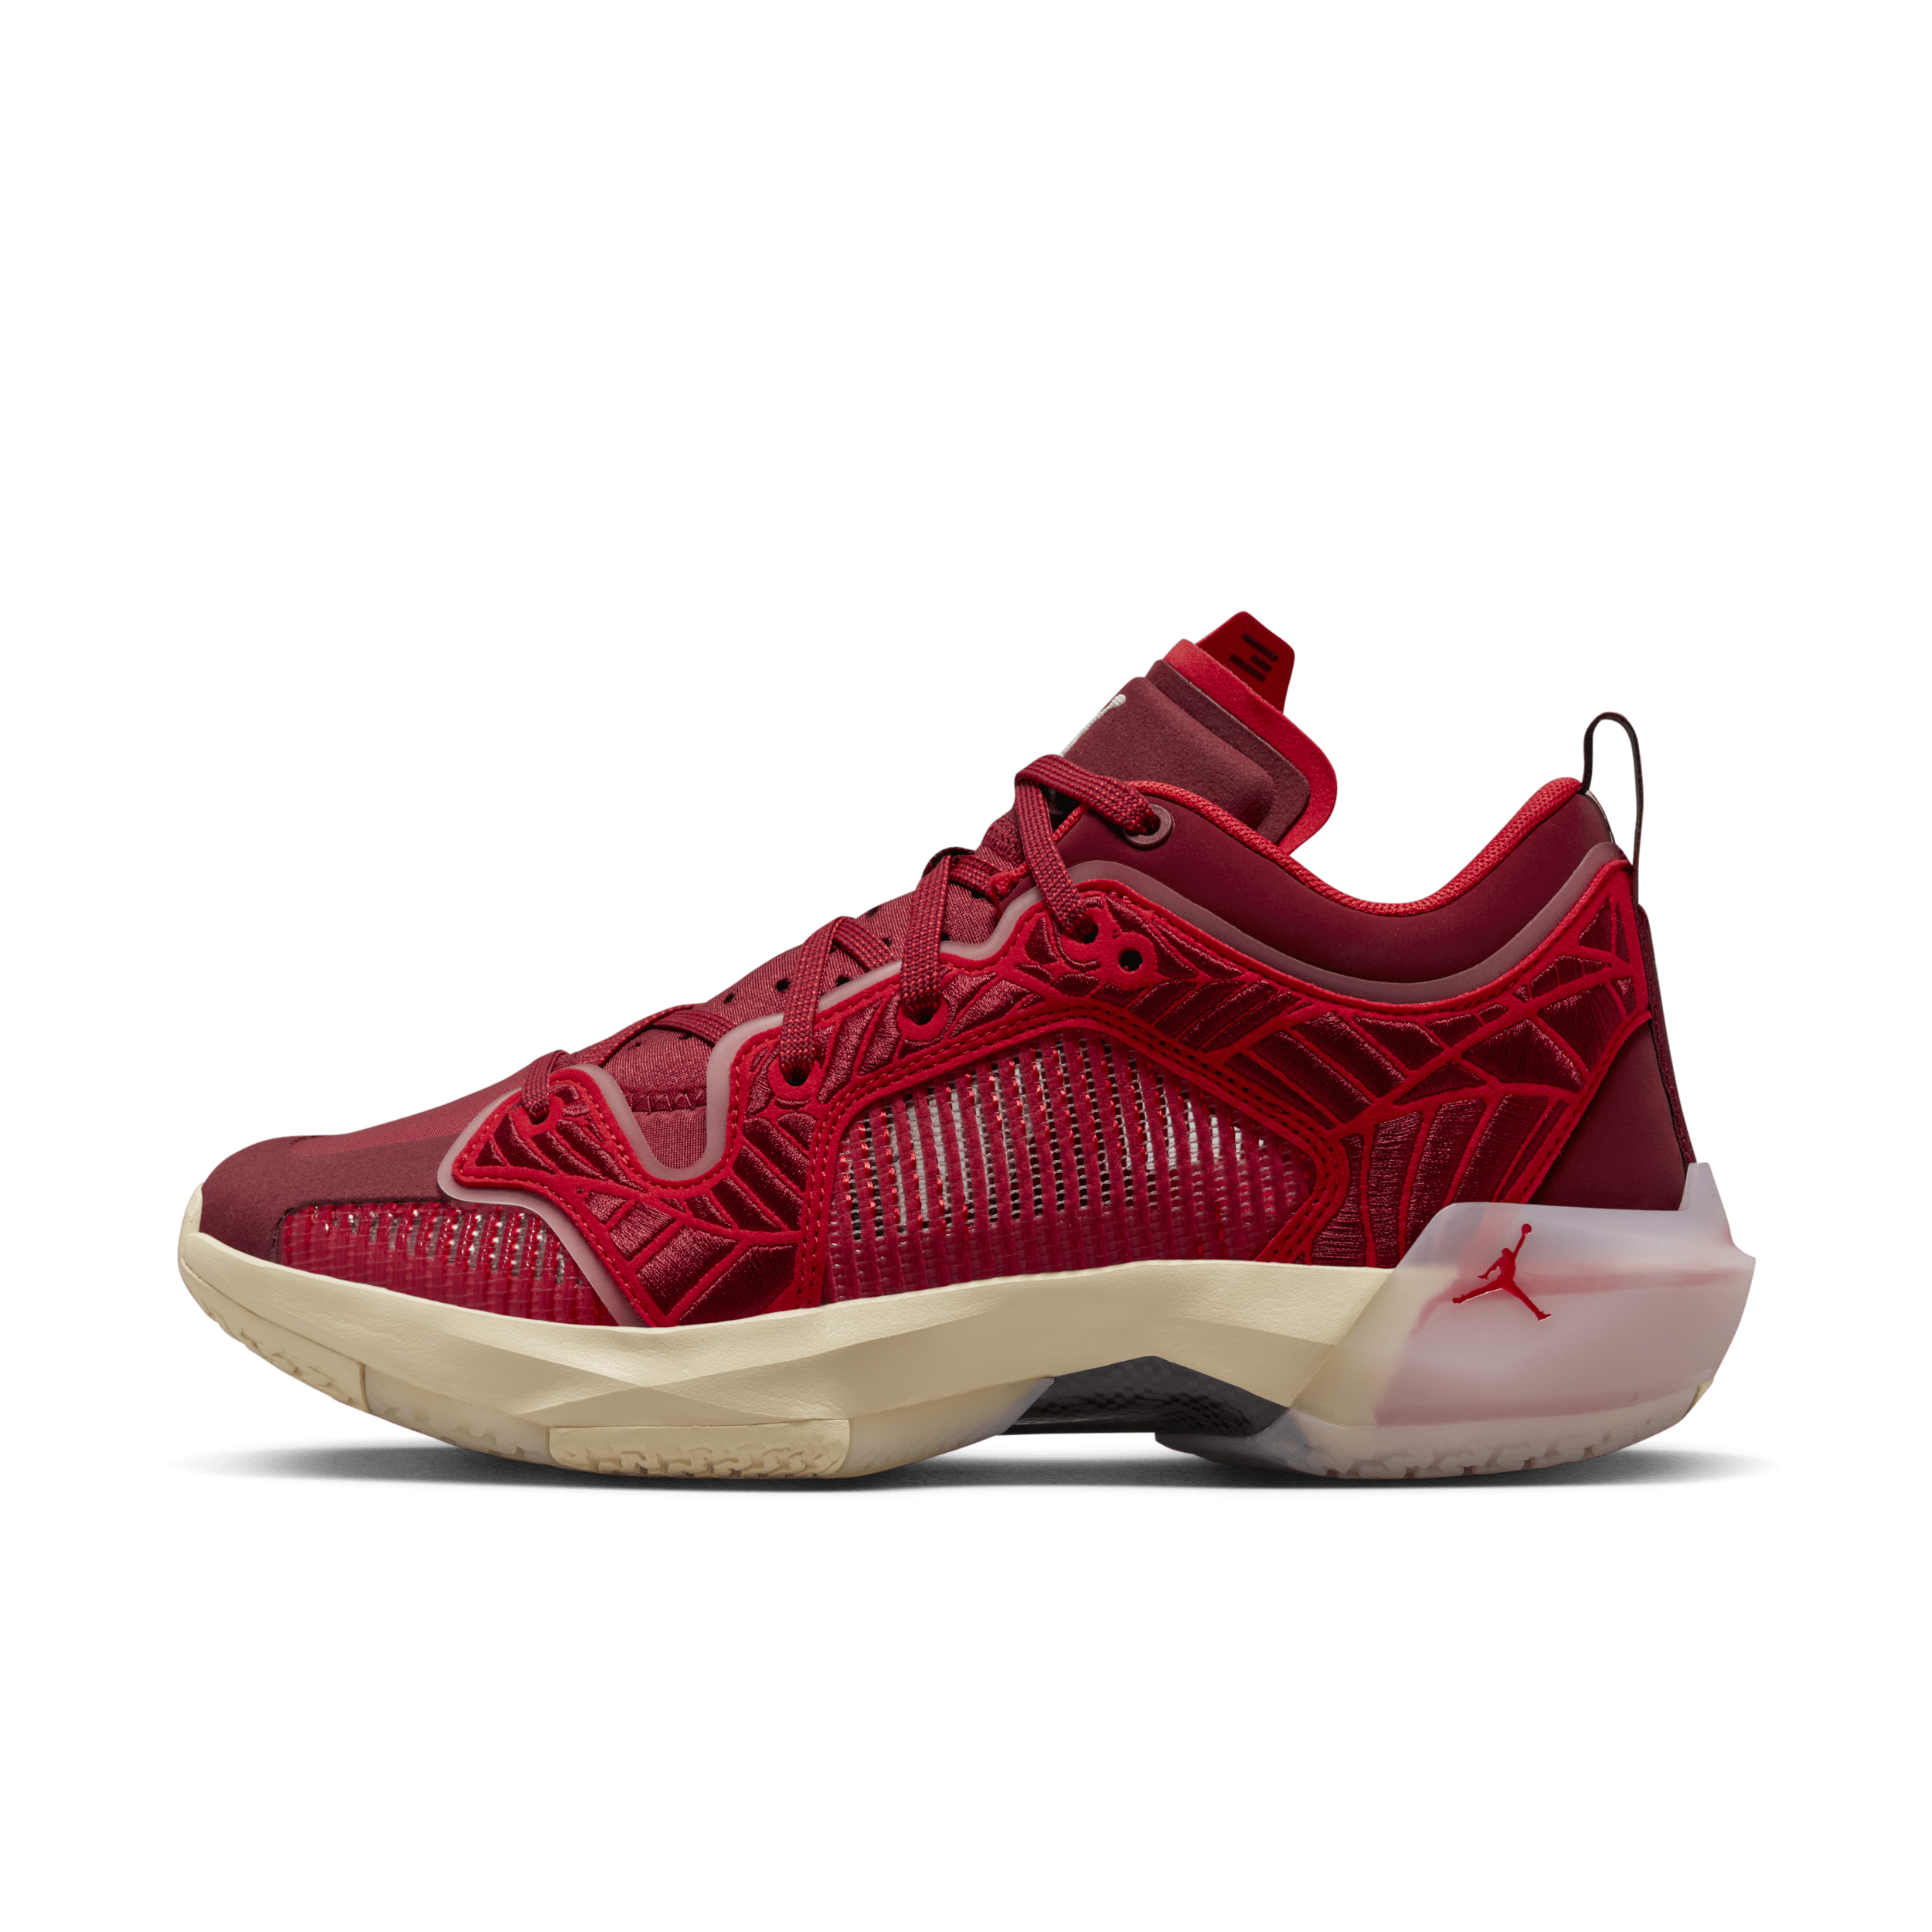 Air Jordan XXXVII Low Zapatillas de baloncesto - Mujer - Rojo